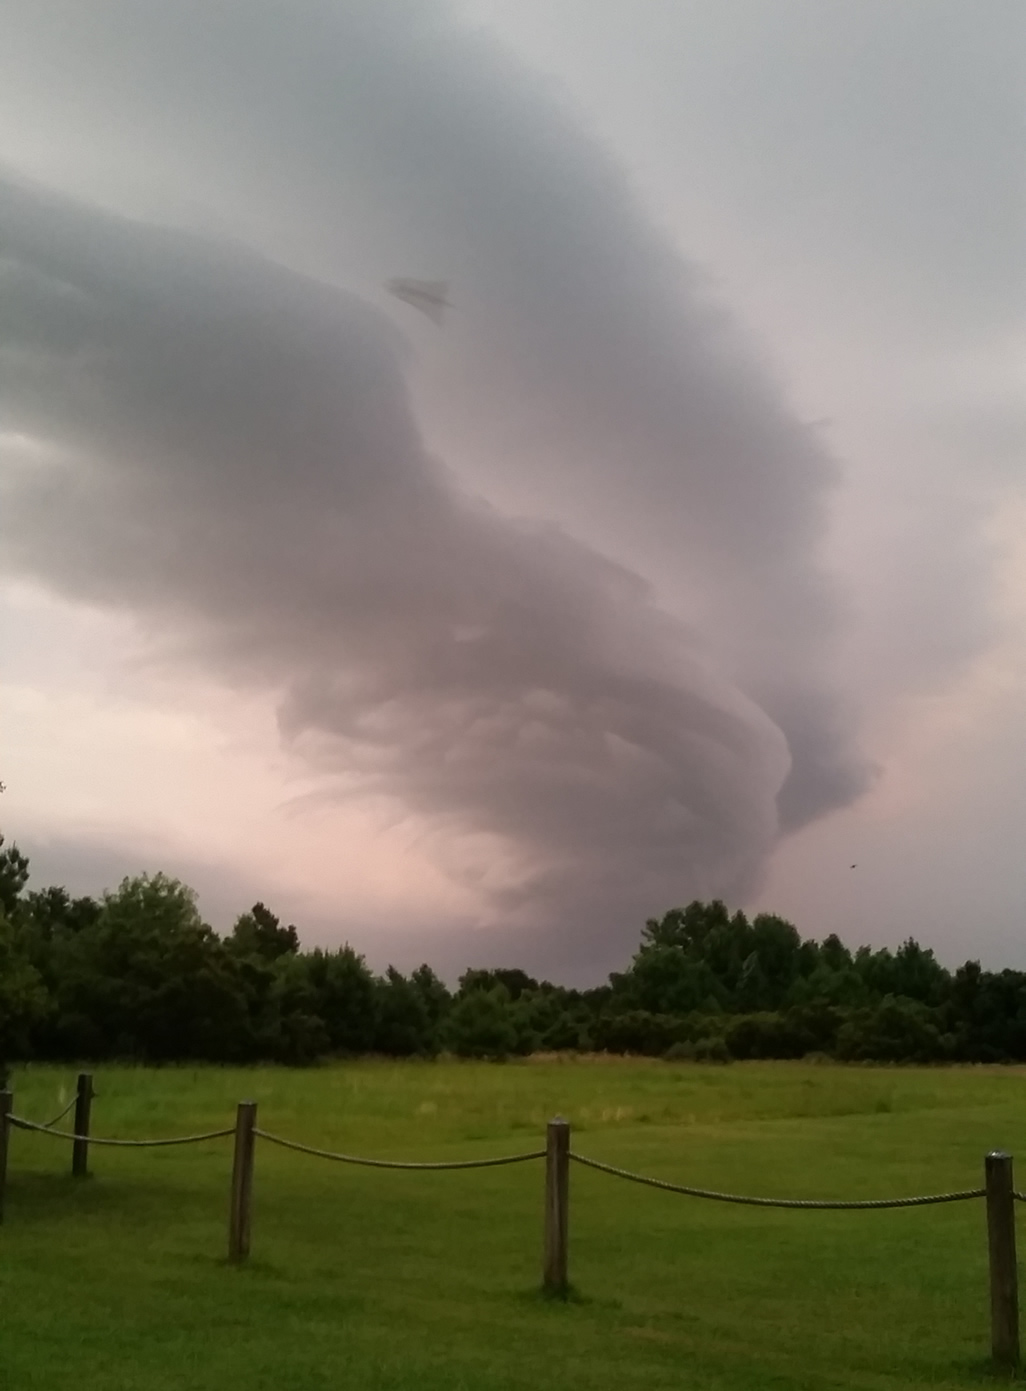 Fotografía capturada sobre Hampstead, Carolina del Norte muestra una anomalía entre las nubes.